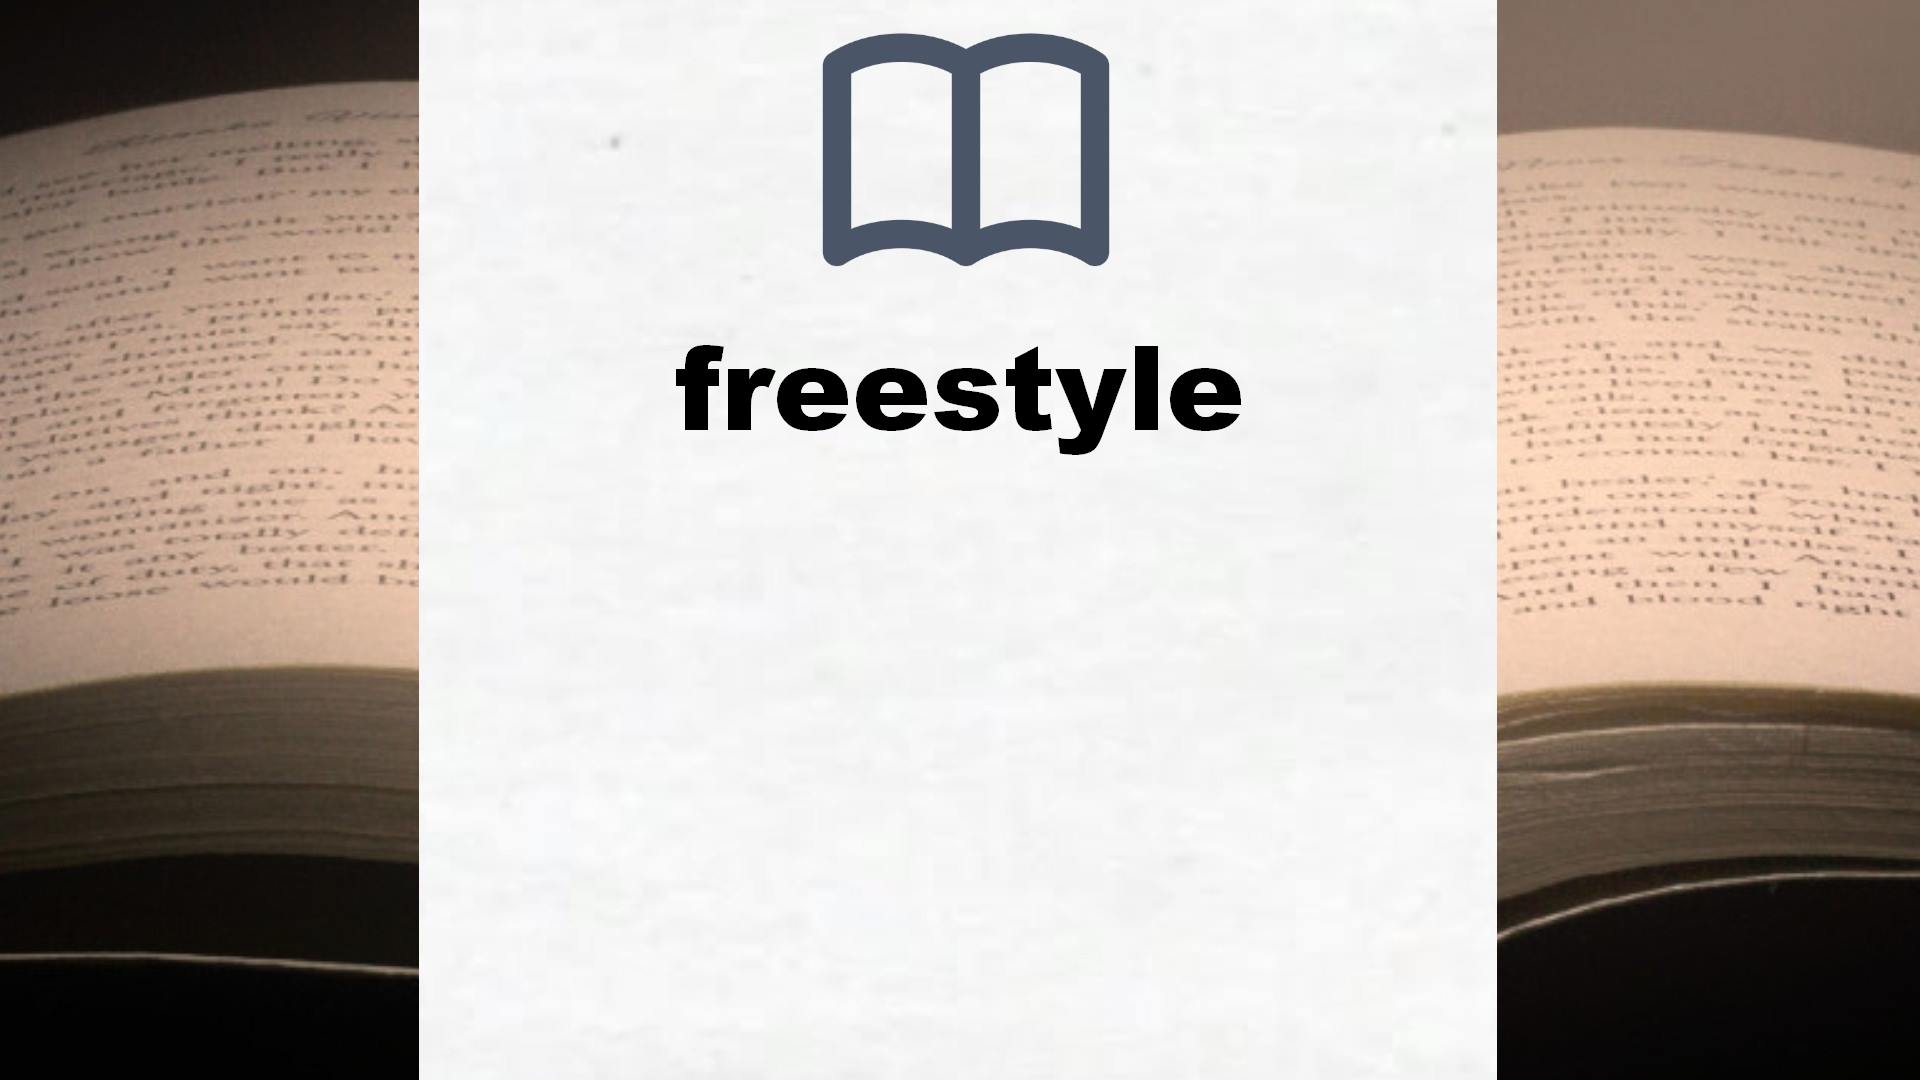 Libros sobre freestyle